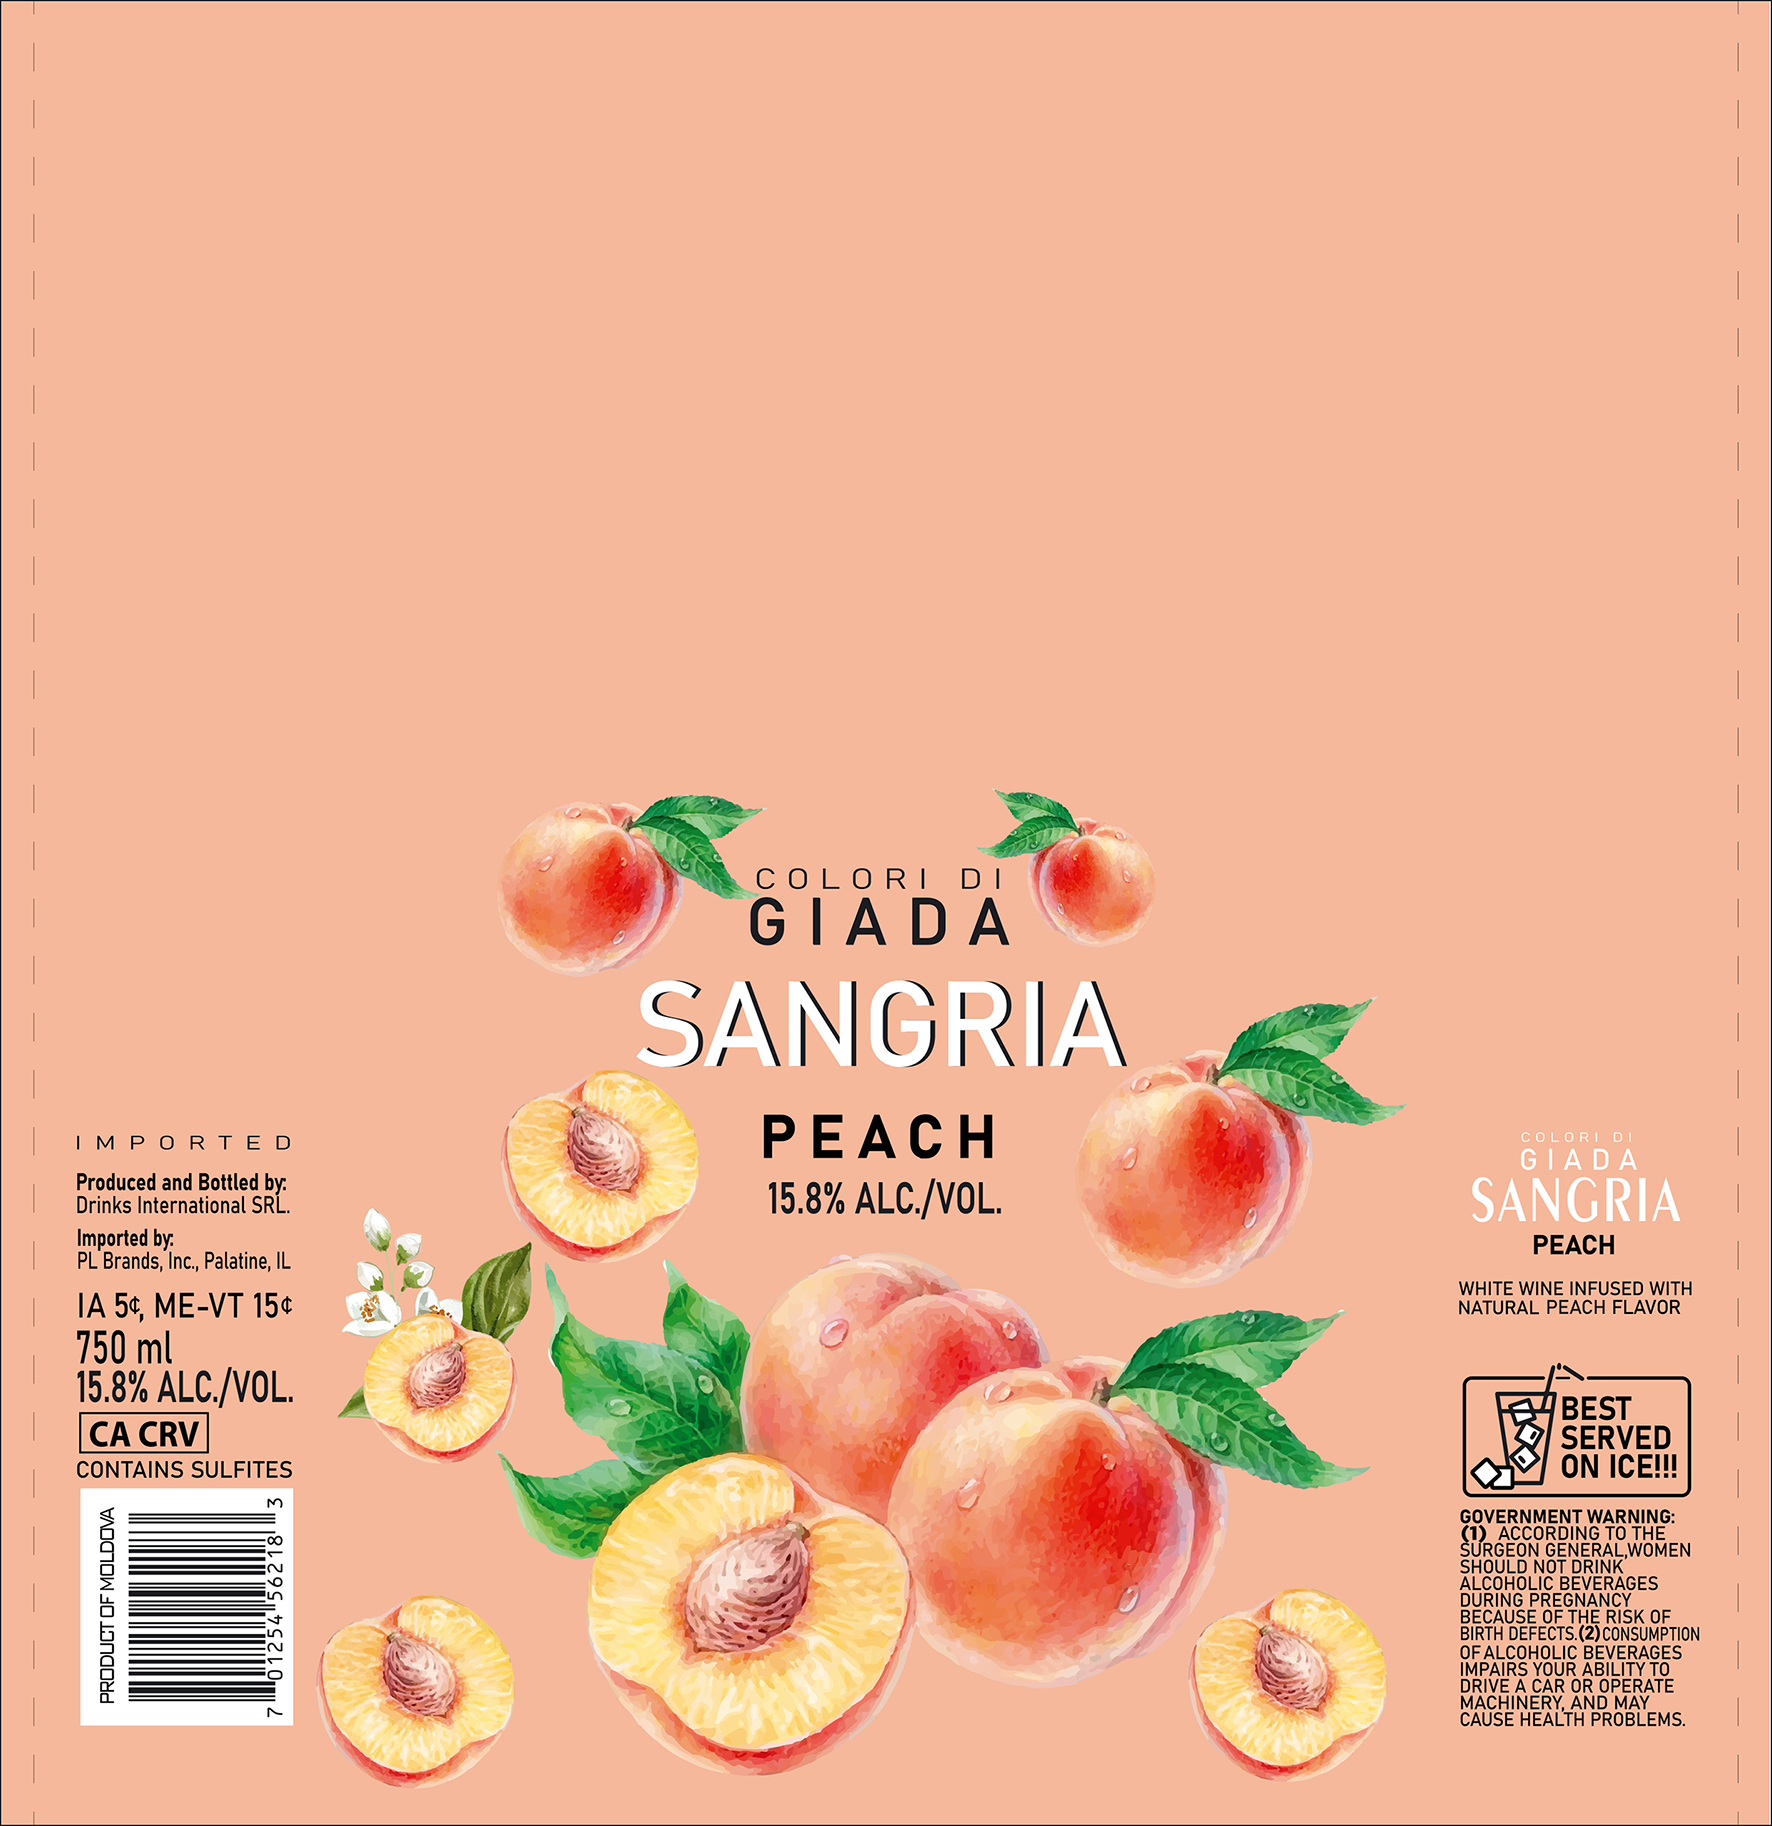 Colori Di Giada Sangria Peach 750 ml 12 units per case 25.4 fl Product Label